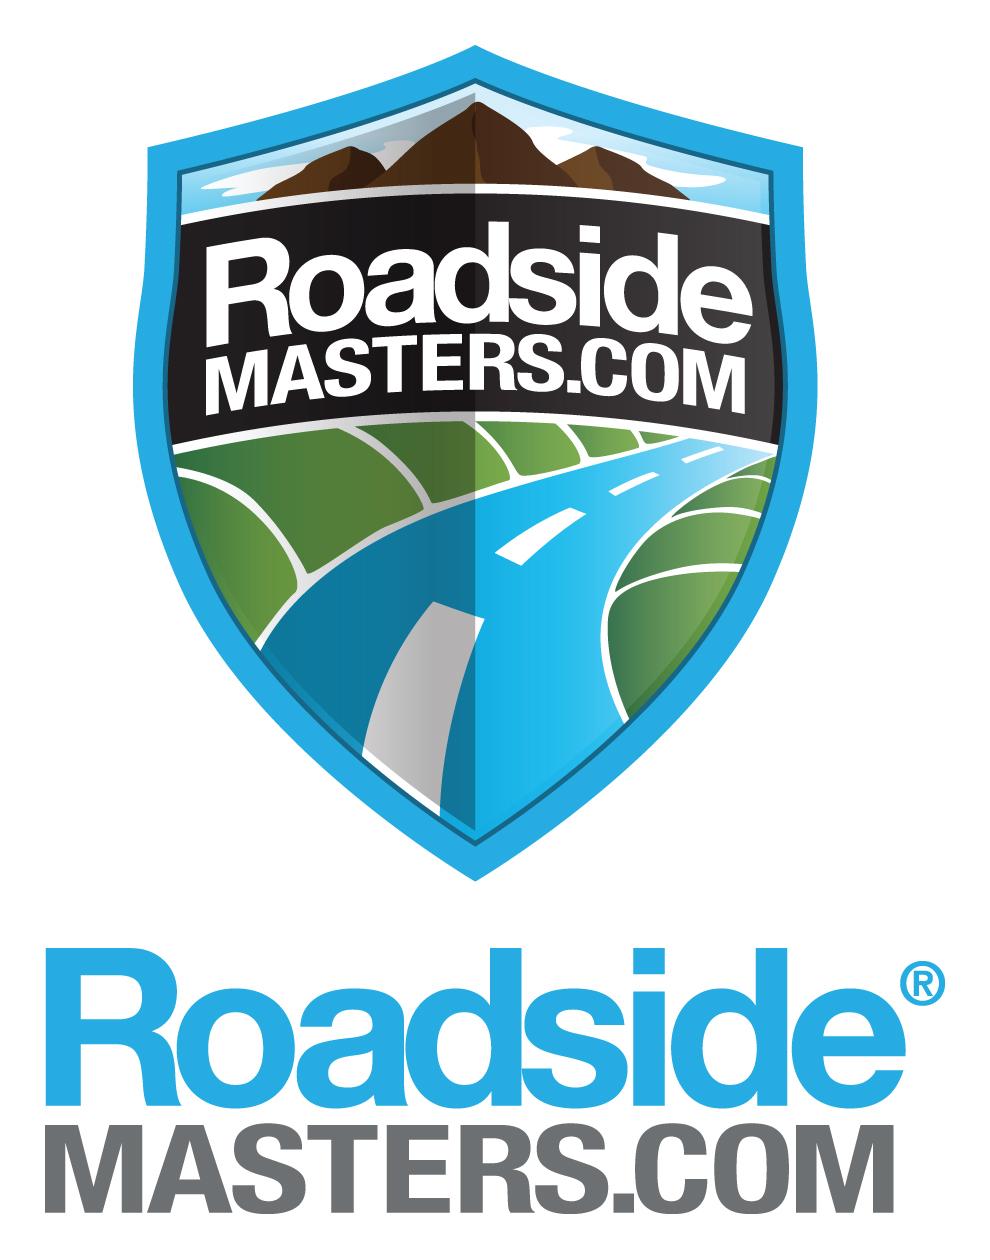 Roadside Service Logo - Penske Used Trucks to Offer Roadside Assistance Plan | blog.gopenske.com